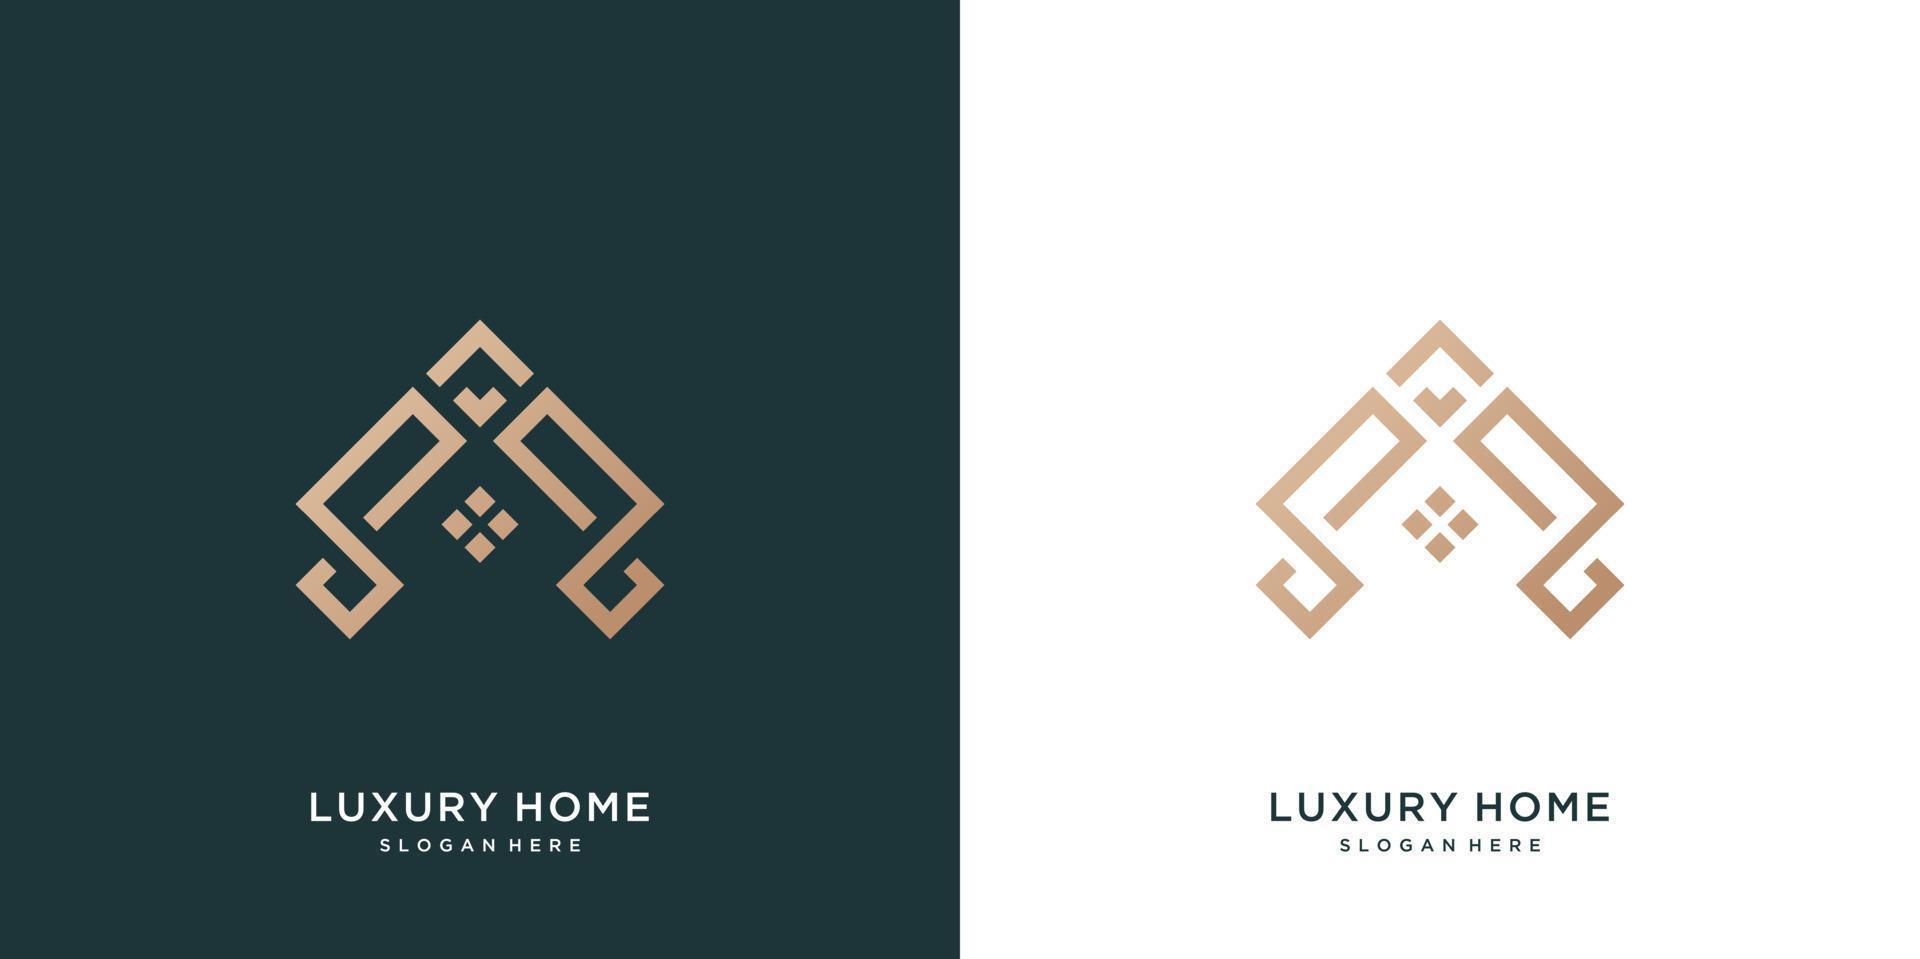 Inspiration für das Logo des minimalistischen, eleganten Wohndesigns vektor